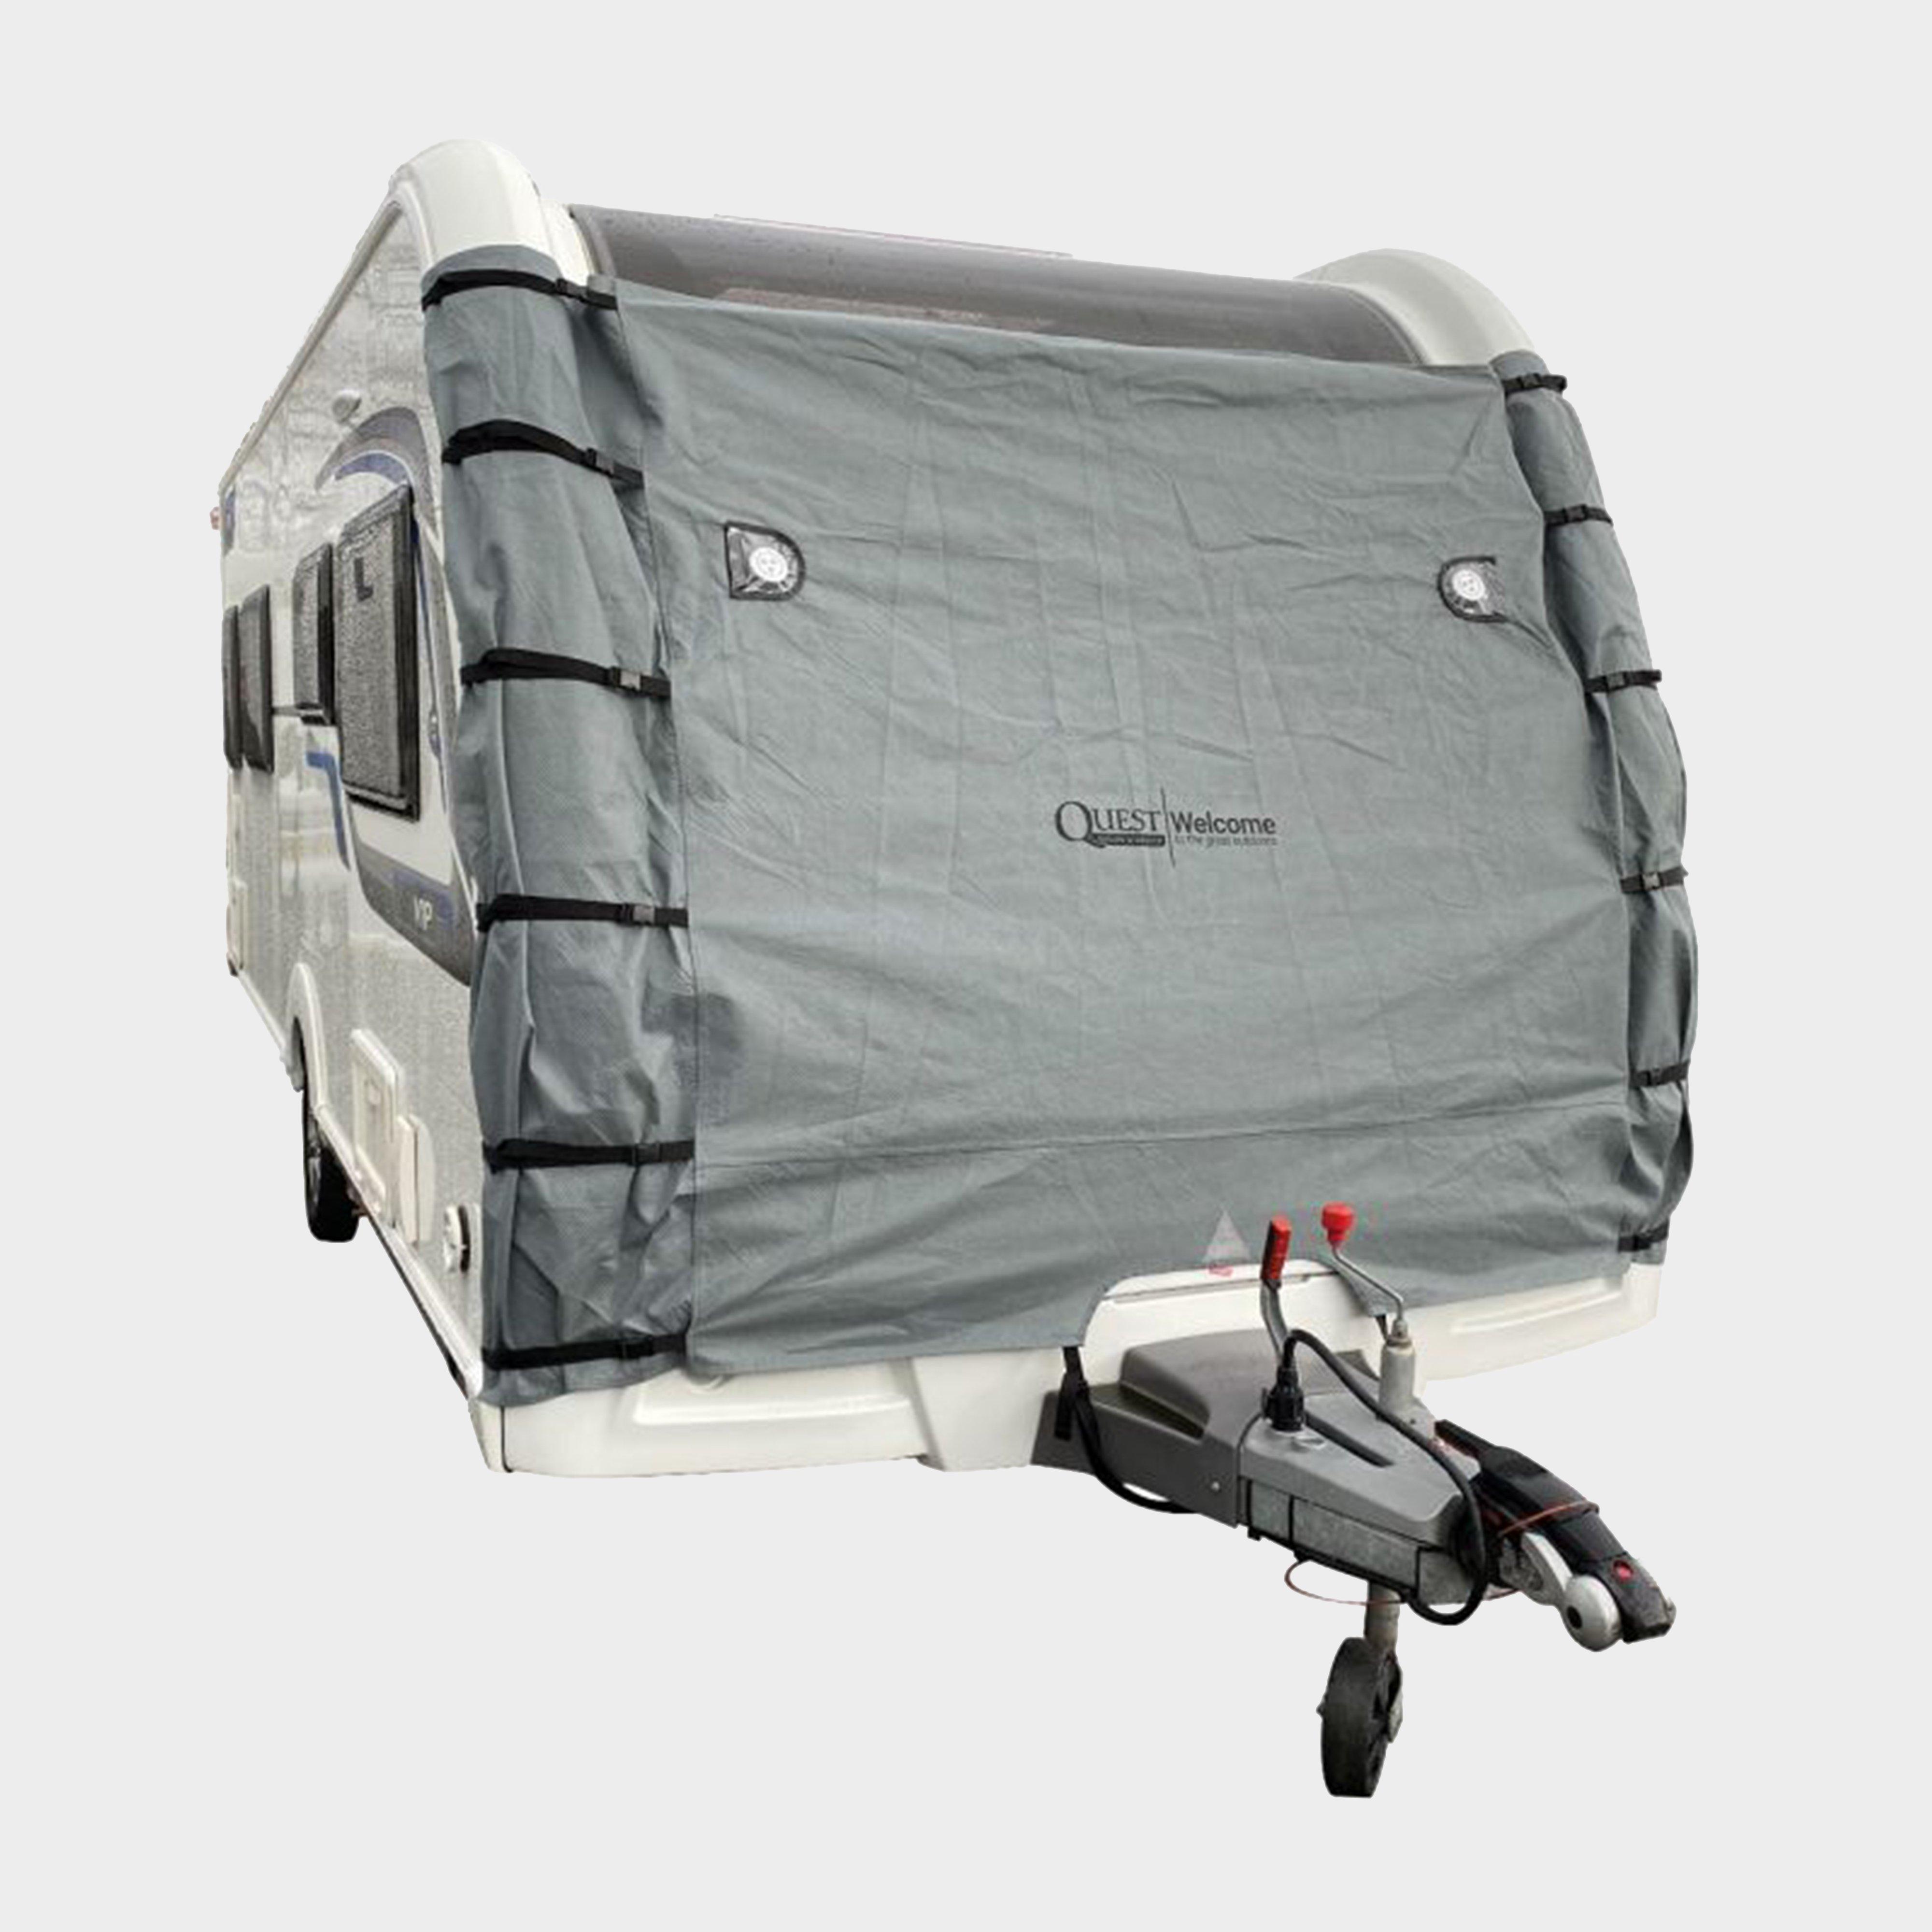  Quest Caravan Cover & Bag, Grey